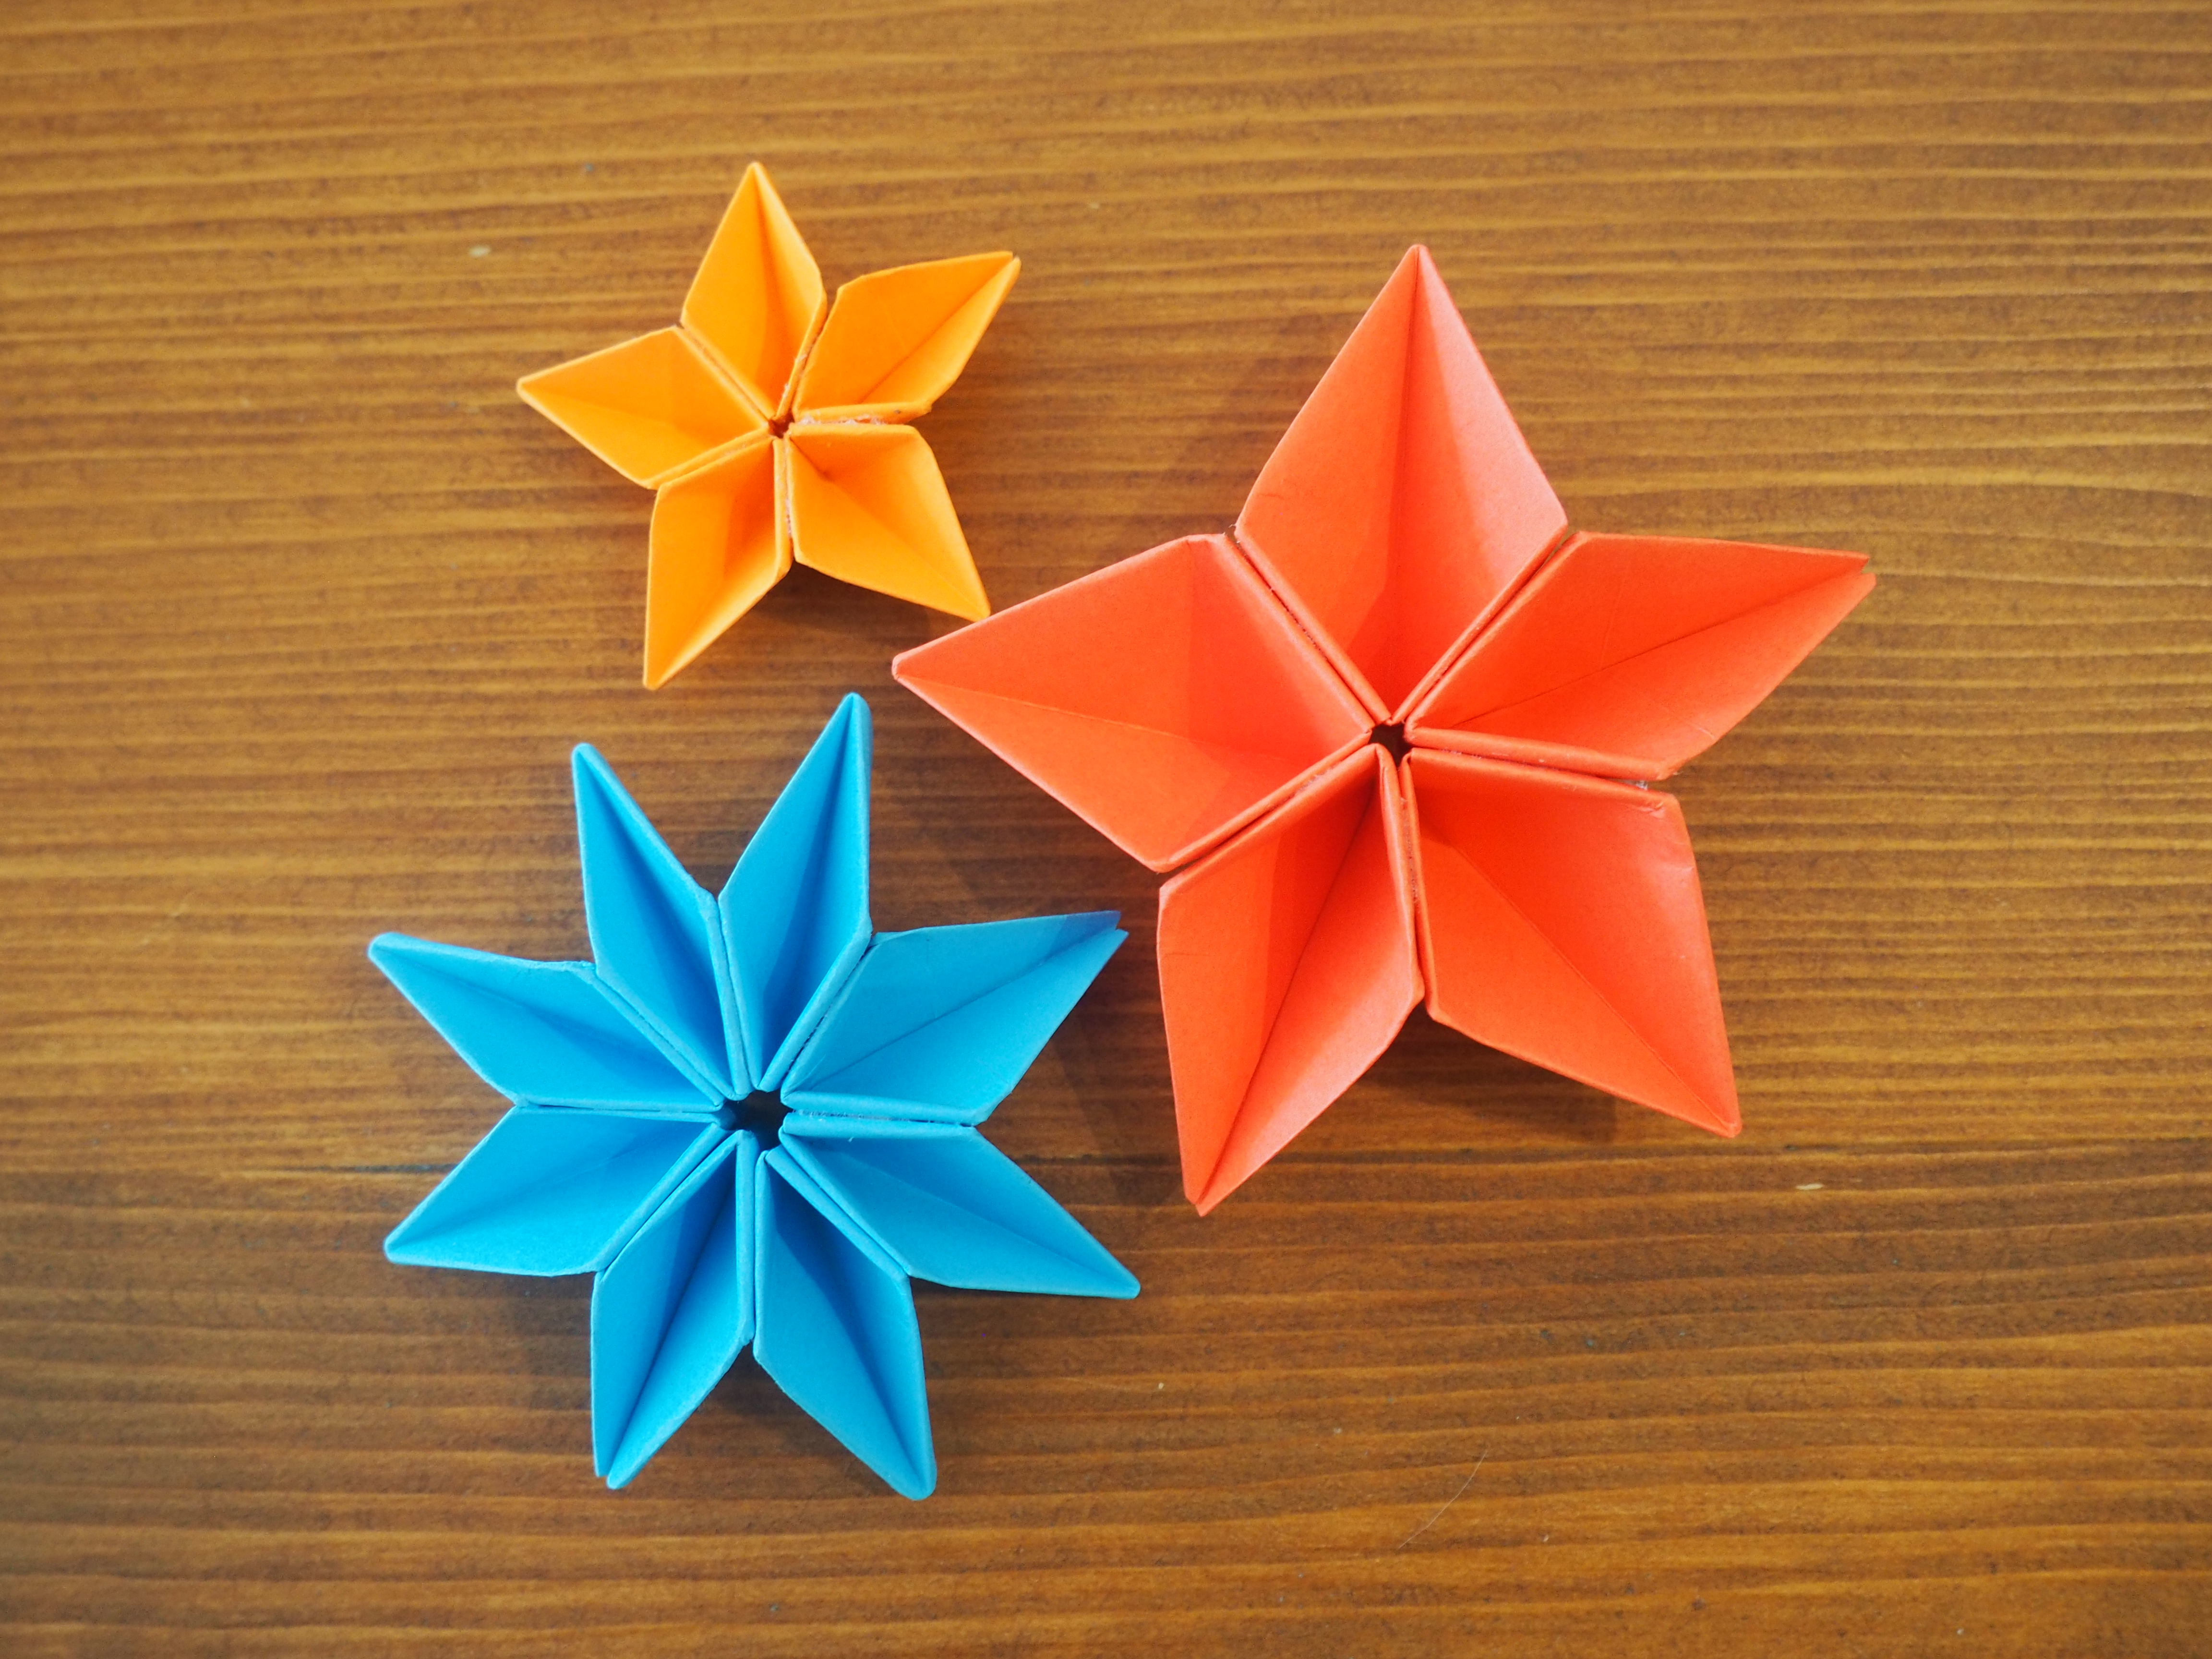 DIY Origami fleur facile Une fleur en origami facile à réaliser